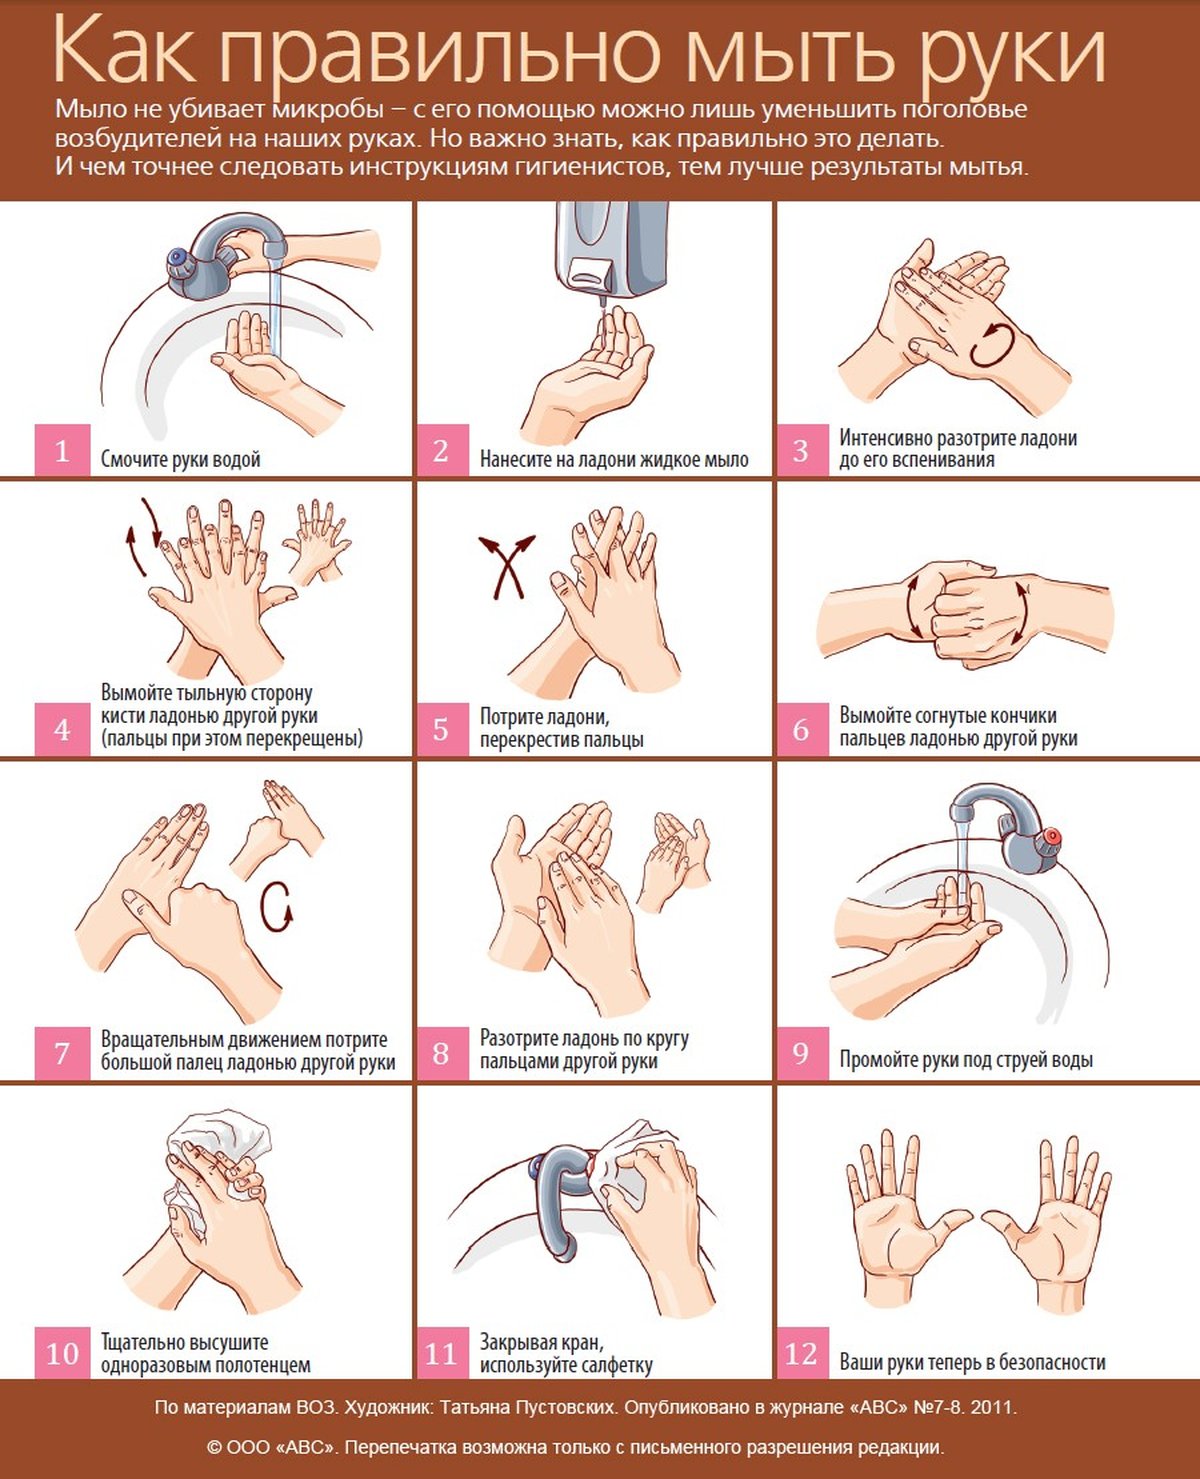 Мытье рук относится к. Хирургическая обработка рук медицинского персонала алгоритм. Хирургическое мытье рук медперсонала алгоритм. Хирургическая дезинфекция рук перед операцией алгоритм. Схема обработки рук медперсонала алгоритм.